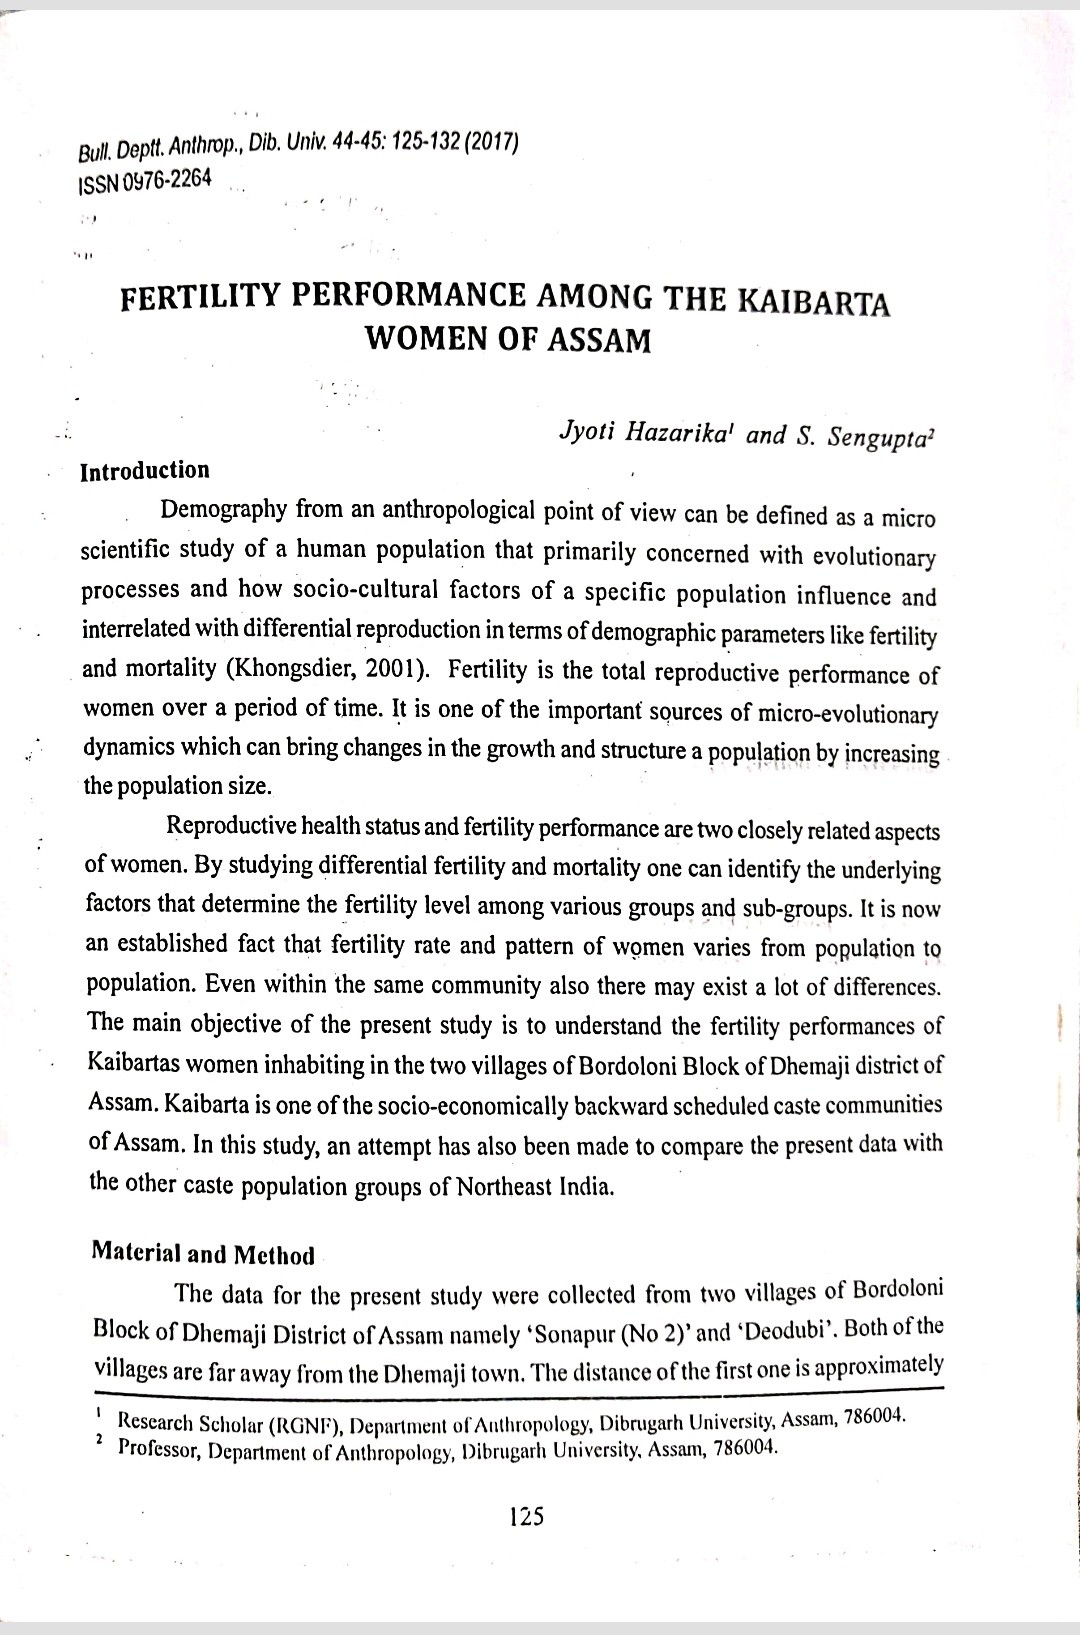 Fertility-Perfomance-Among-heKaibarta-Women-Of-Assam